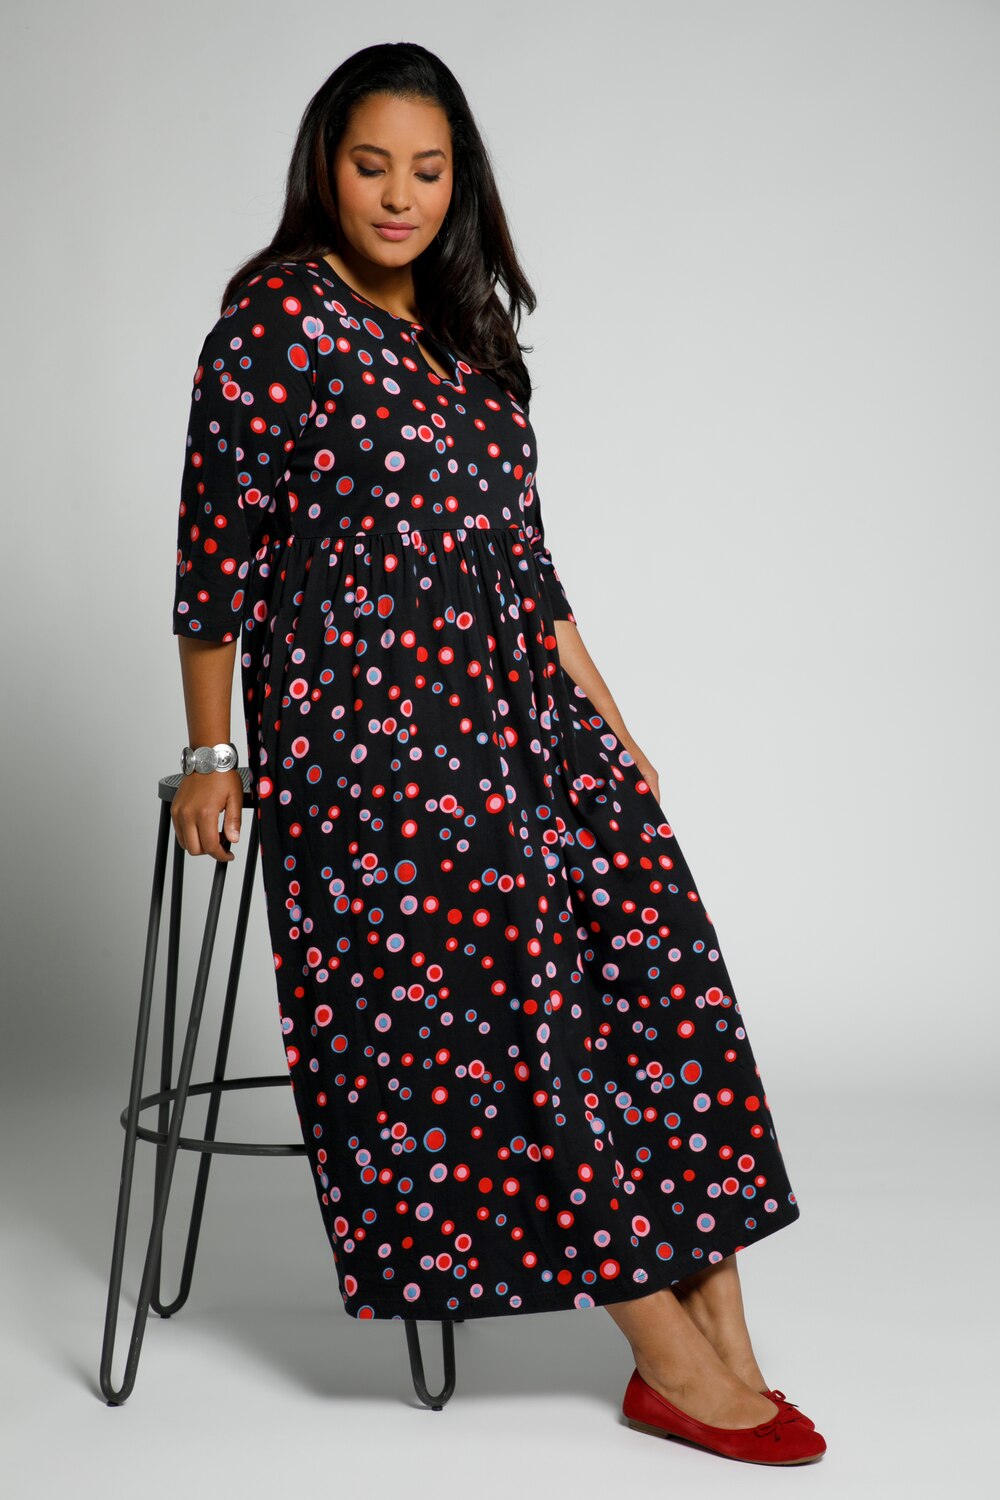 Plus Size Love Dots Print Empire Knit Dress, Woman, black, size: 20/22, cotton, Ulla Popken